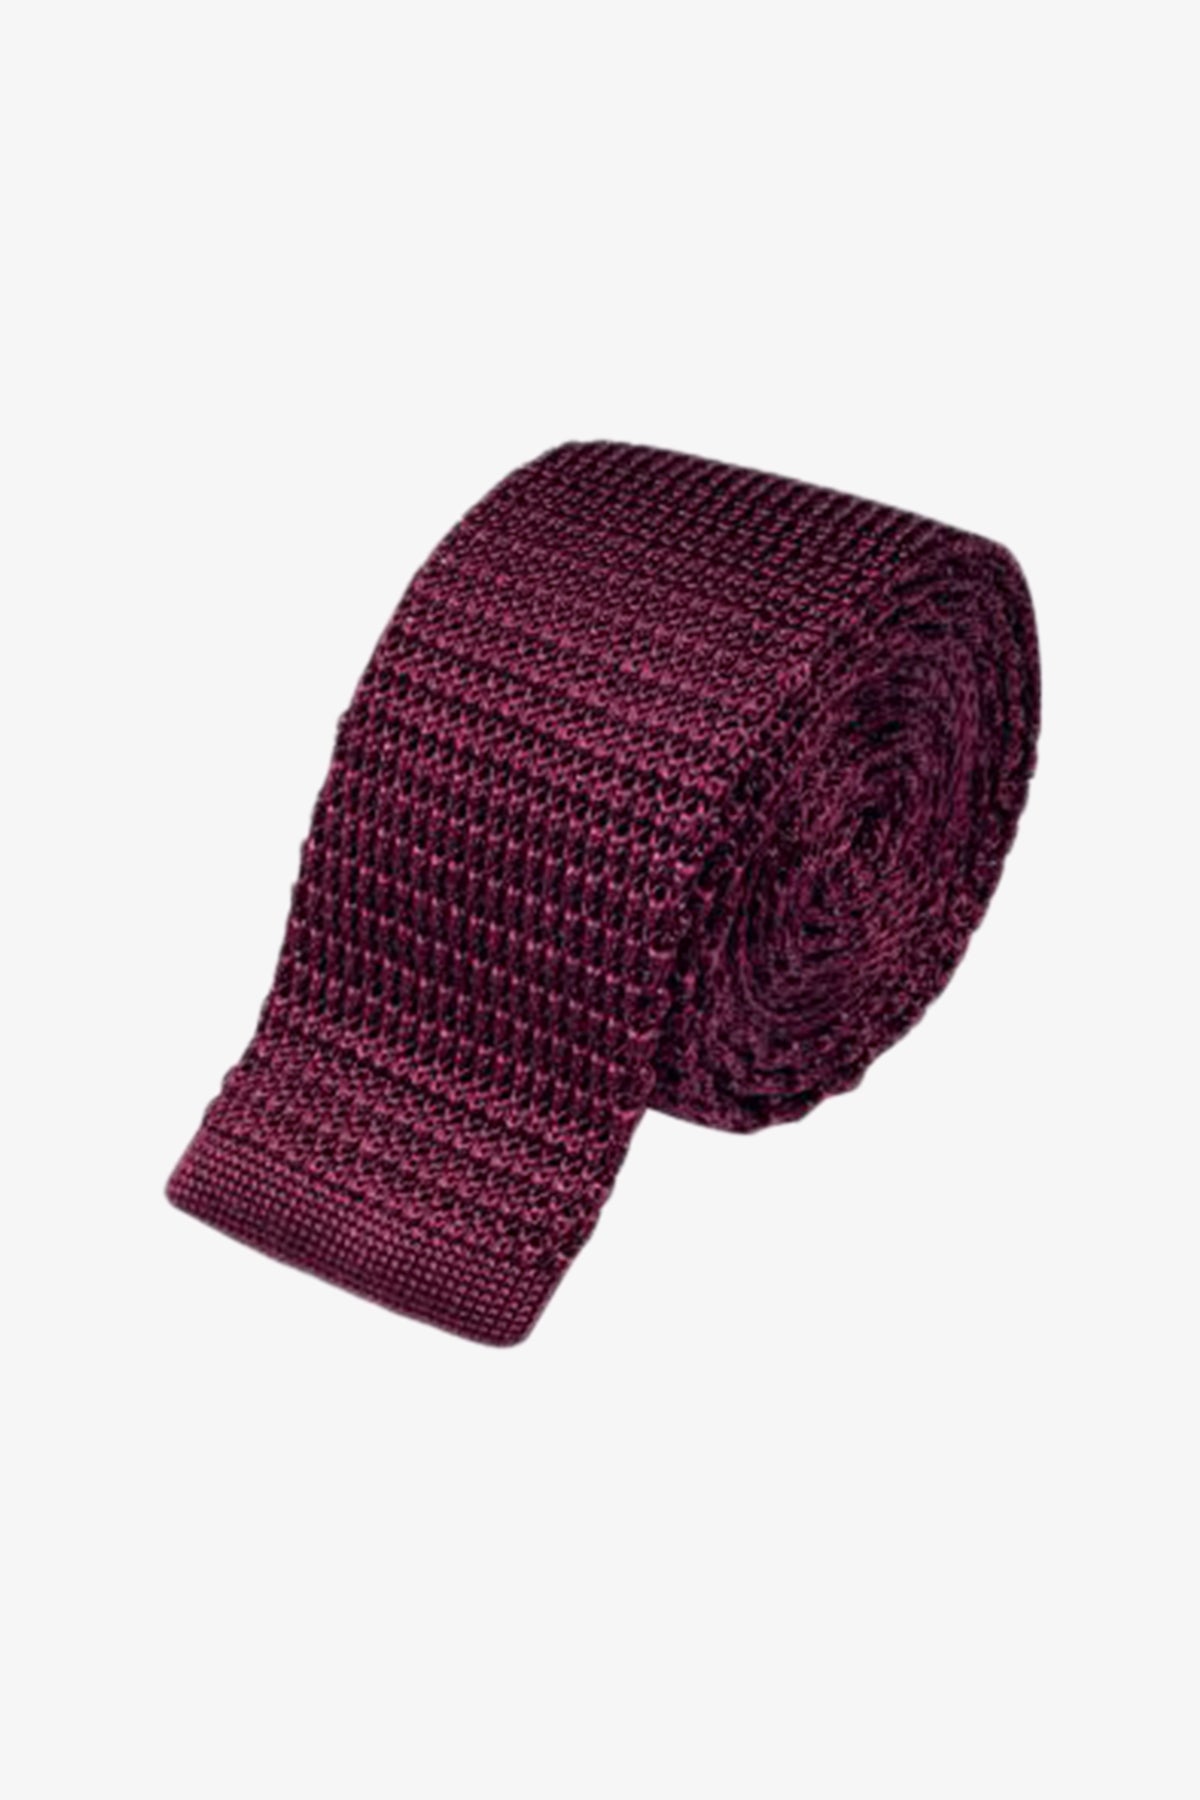 Silk Knitted Tie - Burgundy